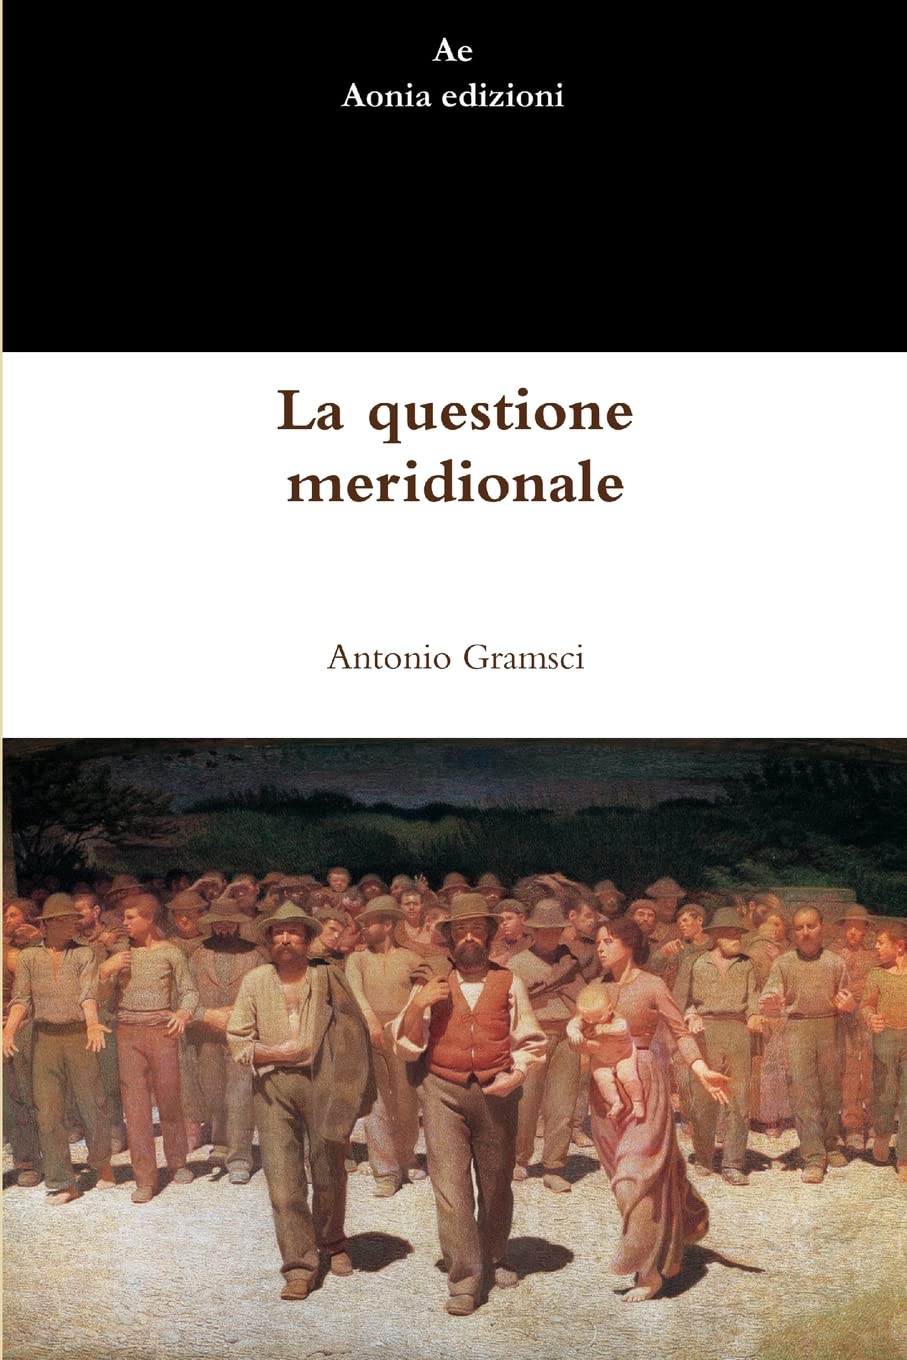 Antonio Gramsci: La questione meridionale (EBook, Aonia edizioni)